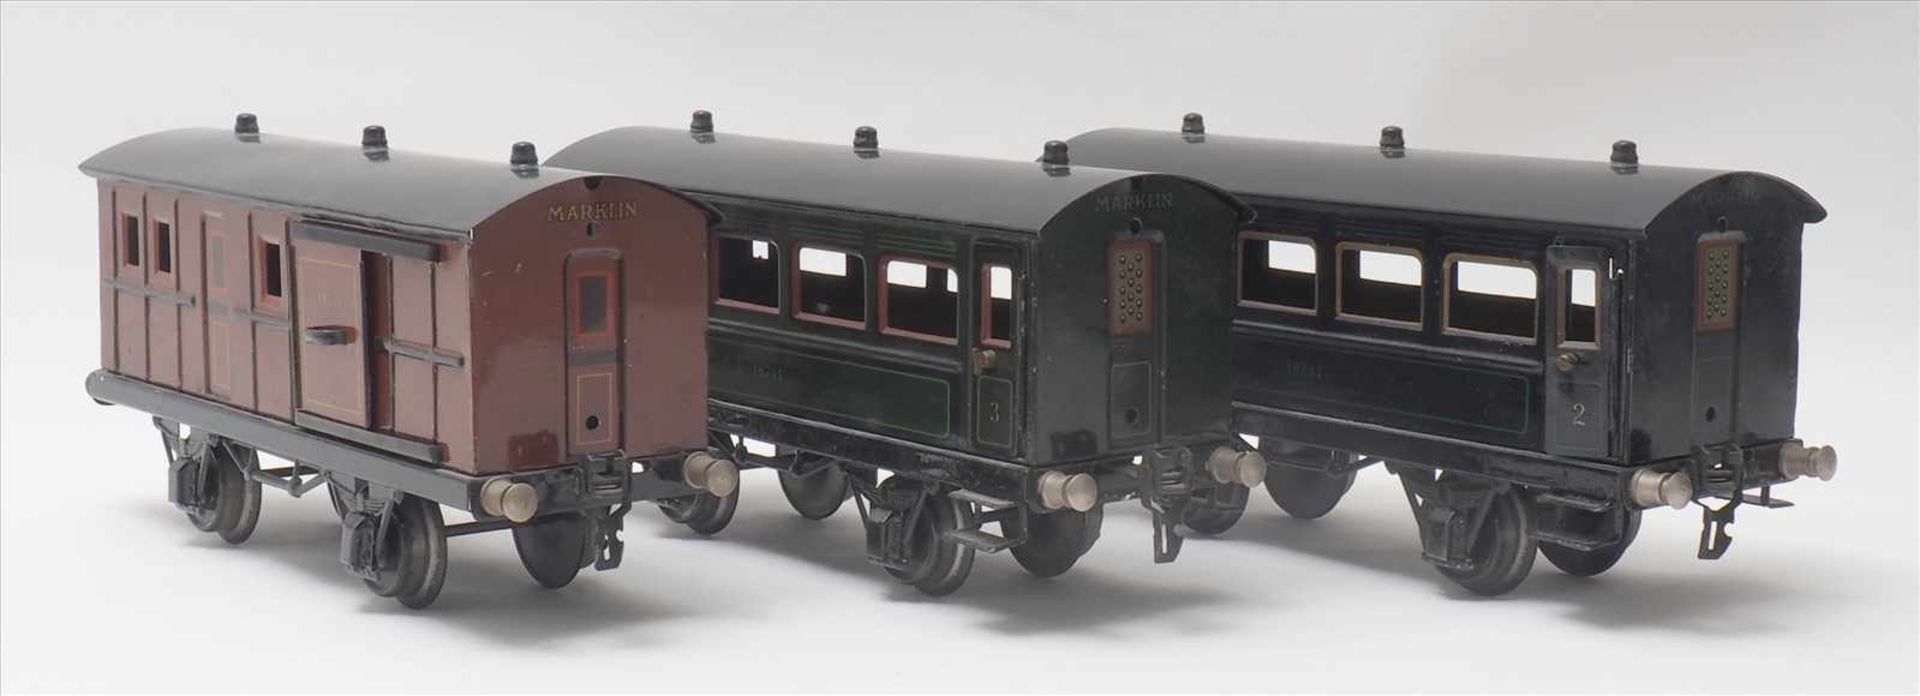 Drei PersonenwagenMärklin Spur 1. 1930-er Jahre. 1./2., 3. Klasse und ein Gepäckwagen Nr. 18741 - Bild 2 aus 5